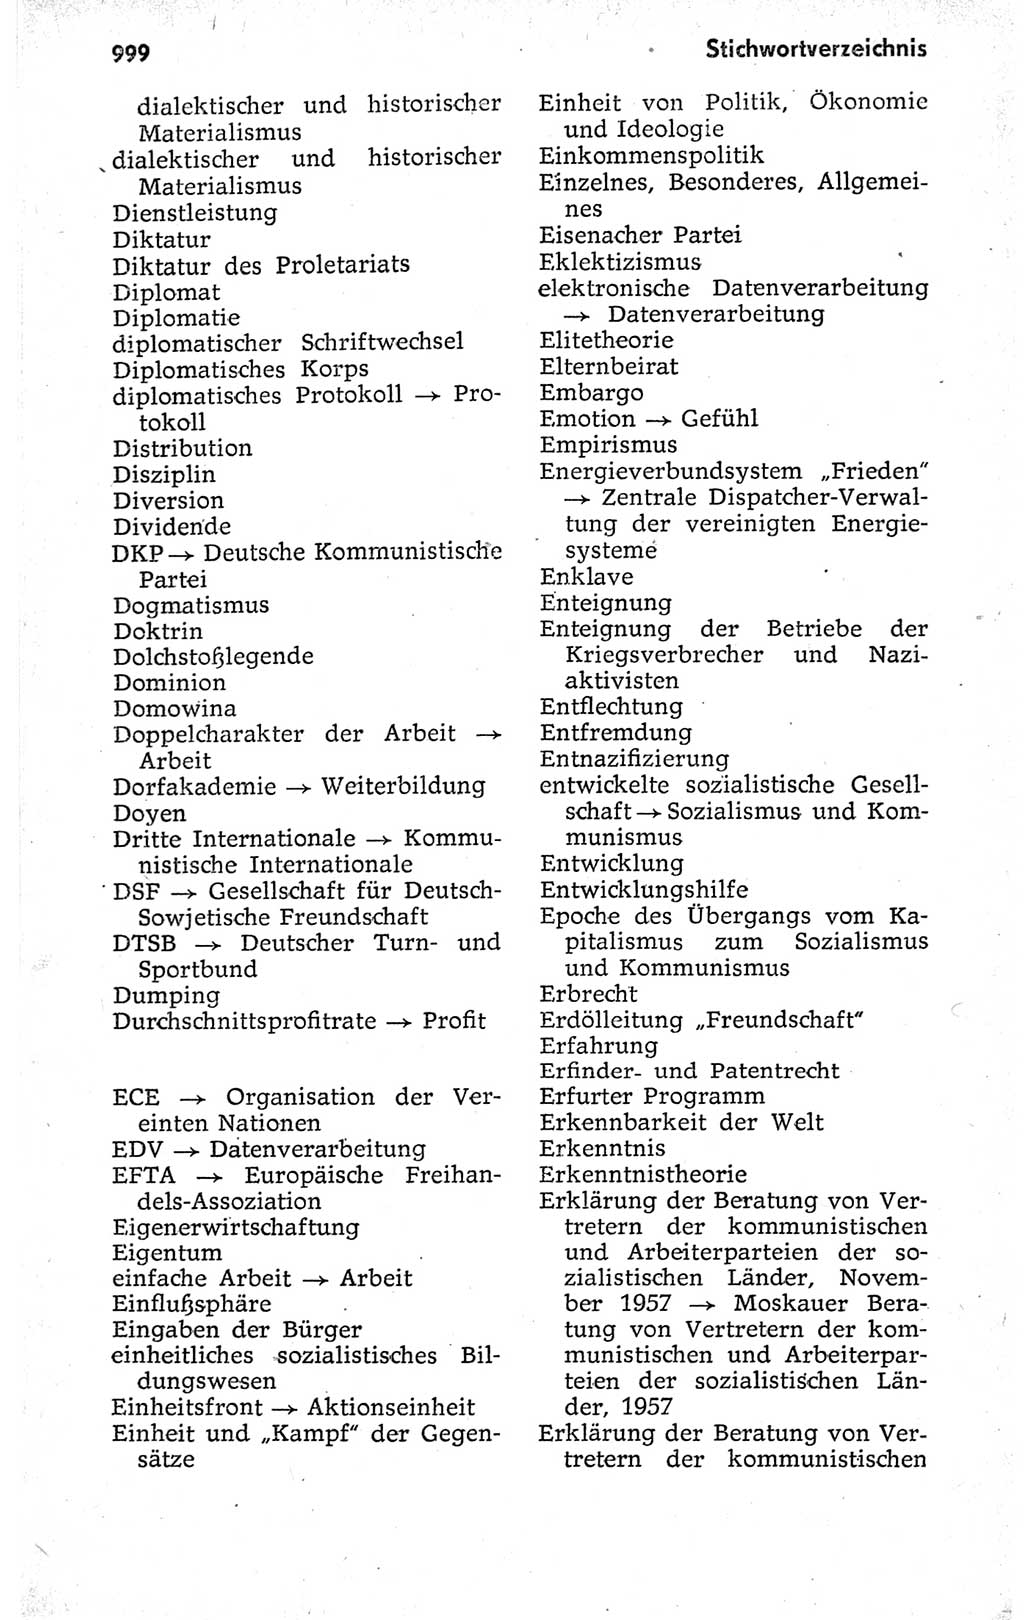 Kleines politisches Wörterbuch [Deutsche Demokratische Republik (DDR)] 1973, Seite 999 (Kl. pol. Wb. DDR 1973, S. 999)